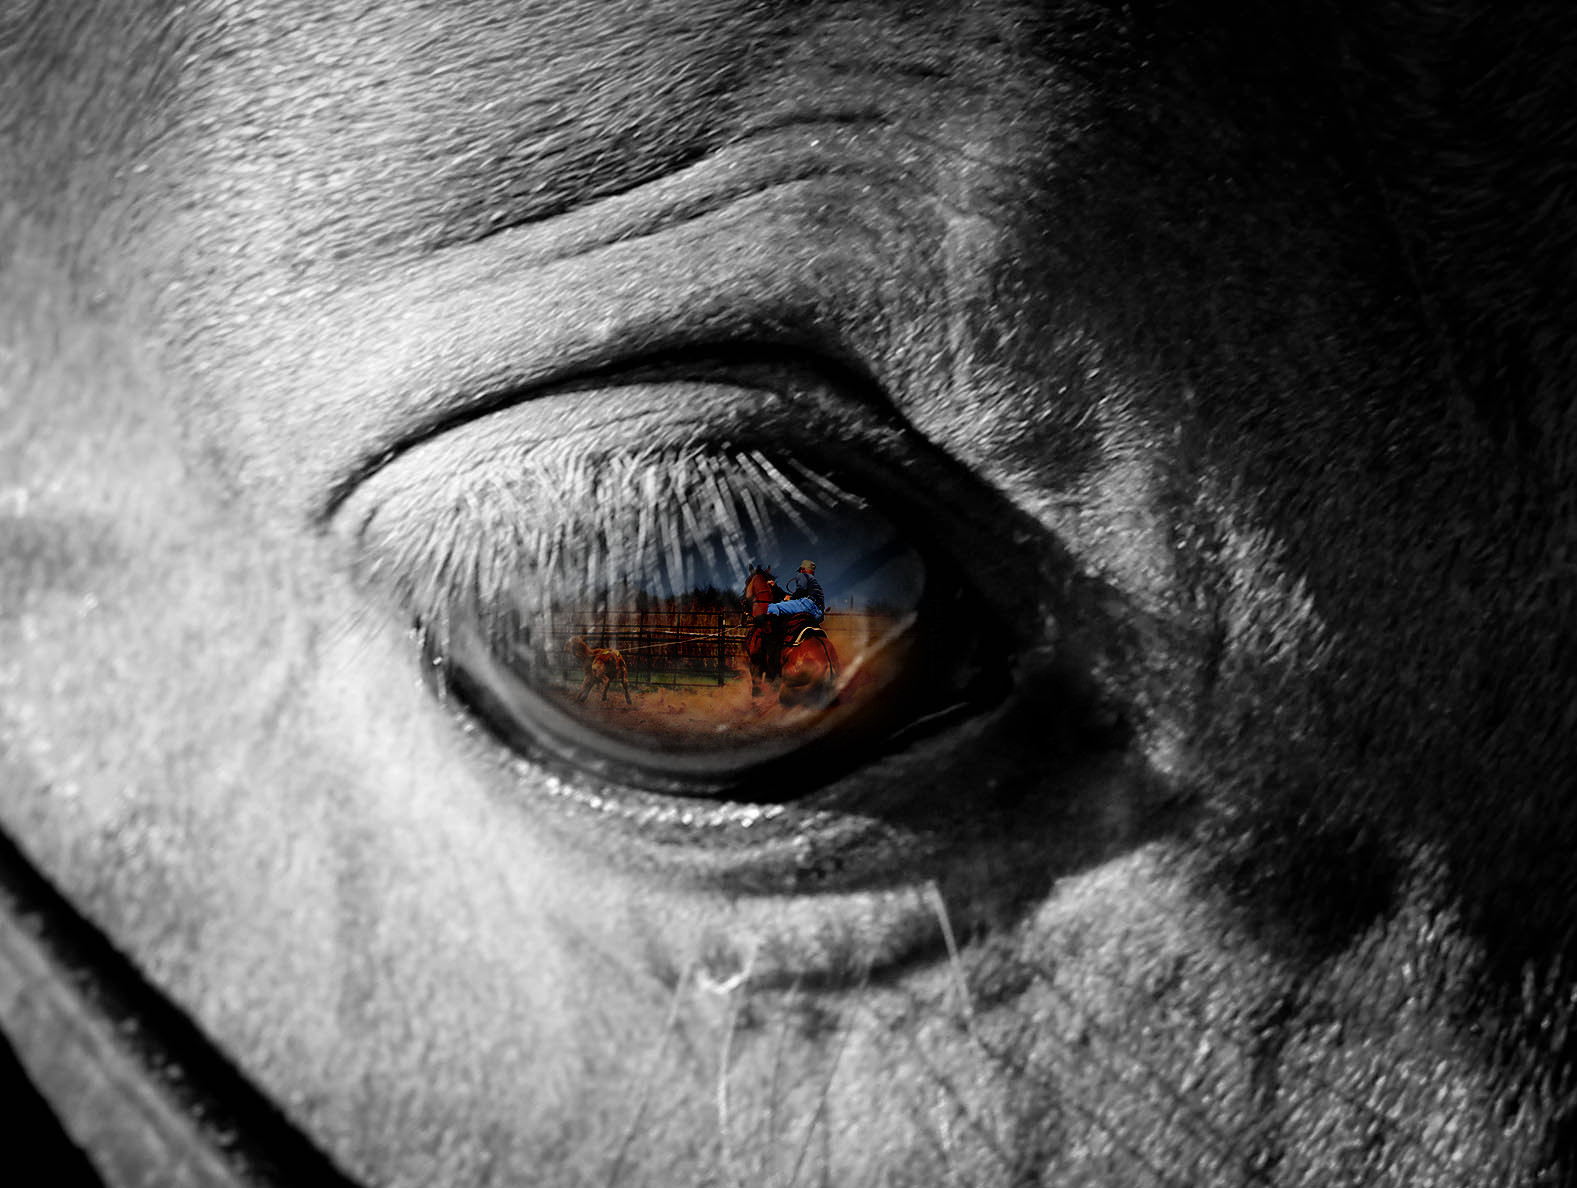 Blackwithcolor eye close up.jpg